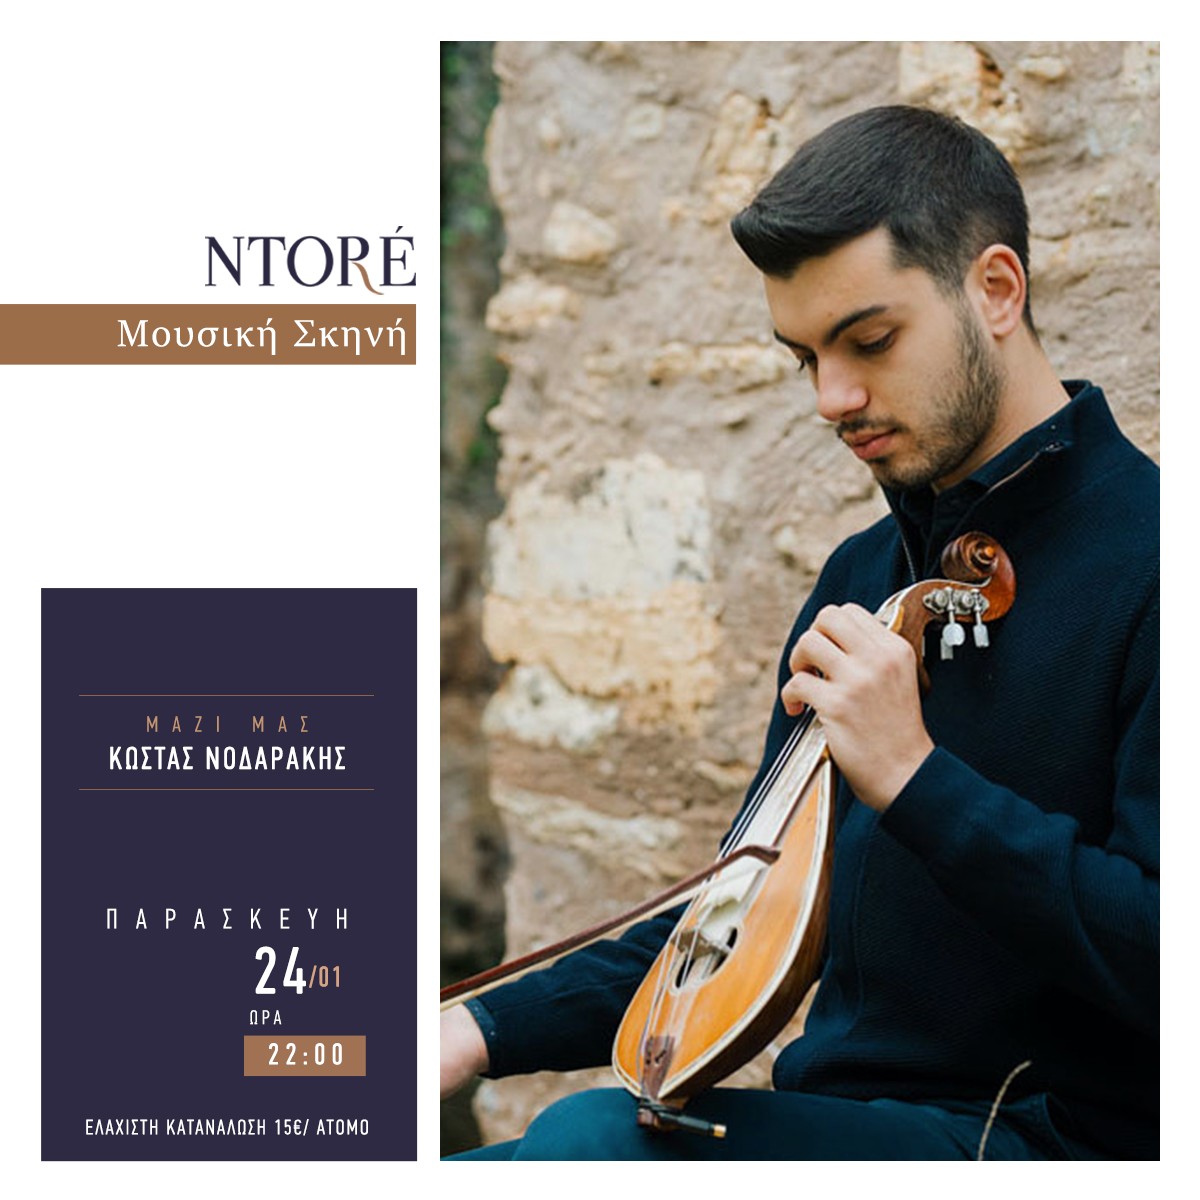 Ο Κώστας Νοδαράκης, την Παρασκευή 24 Ιανουαρίου, στις 22:00, στη Μουσική Σκηνή Ntoré!